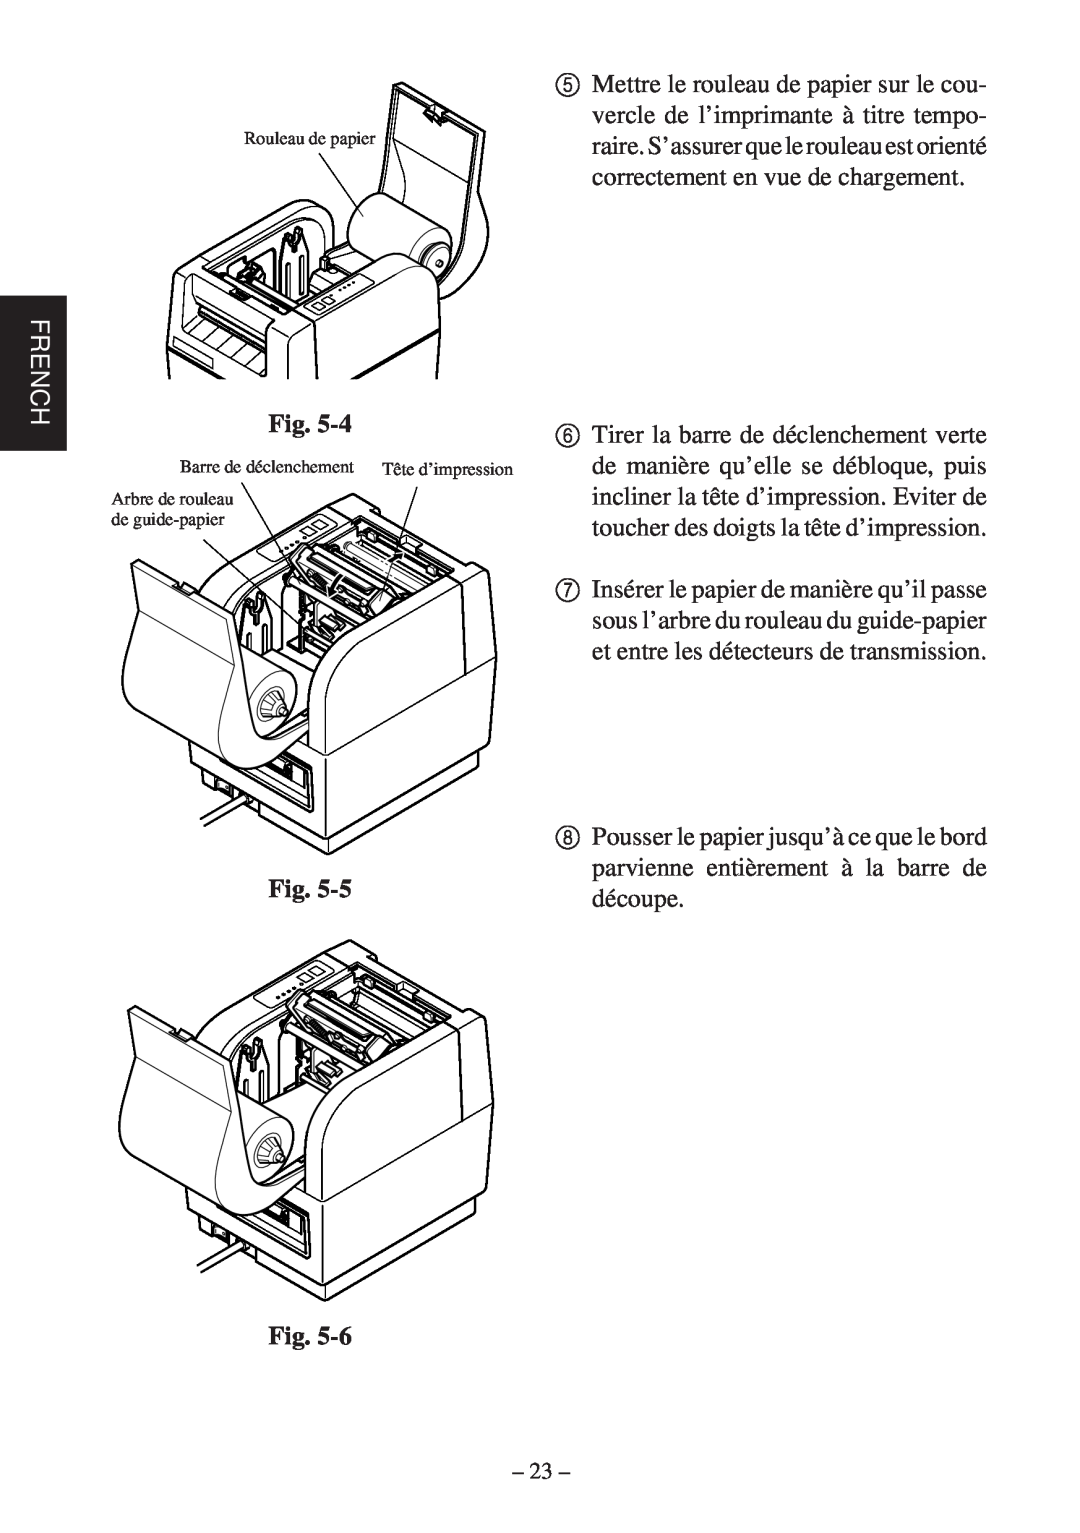 Star Micronics TSP400Z Series French, Rouleau de papier, Barre de déclenchement, Arbre de rouleau de guide-papier 